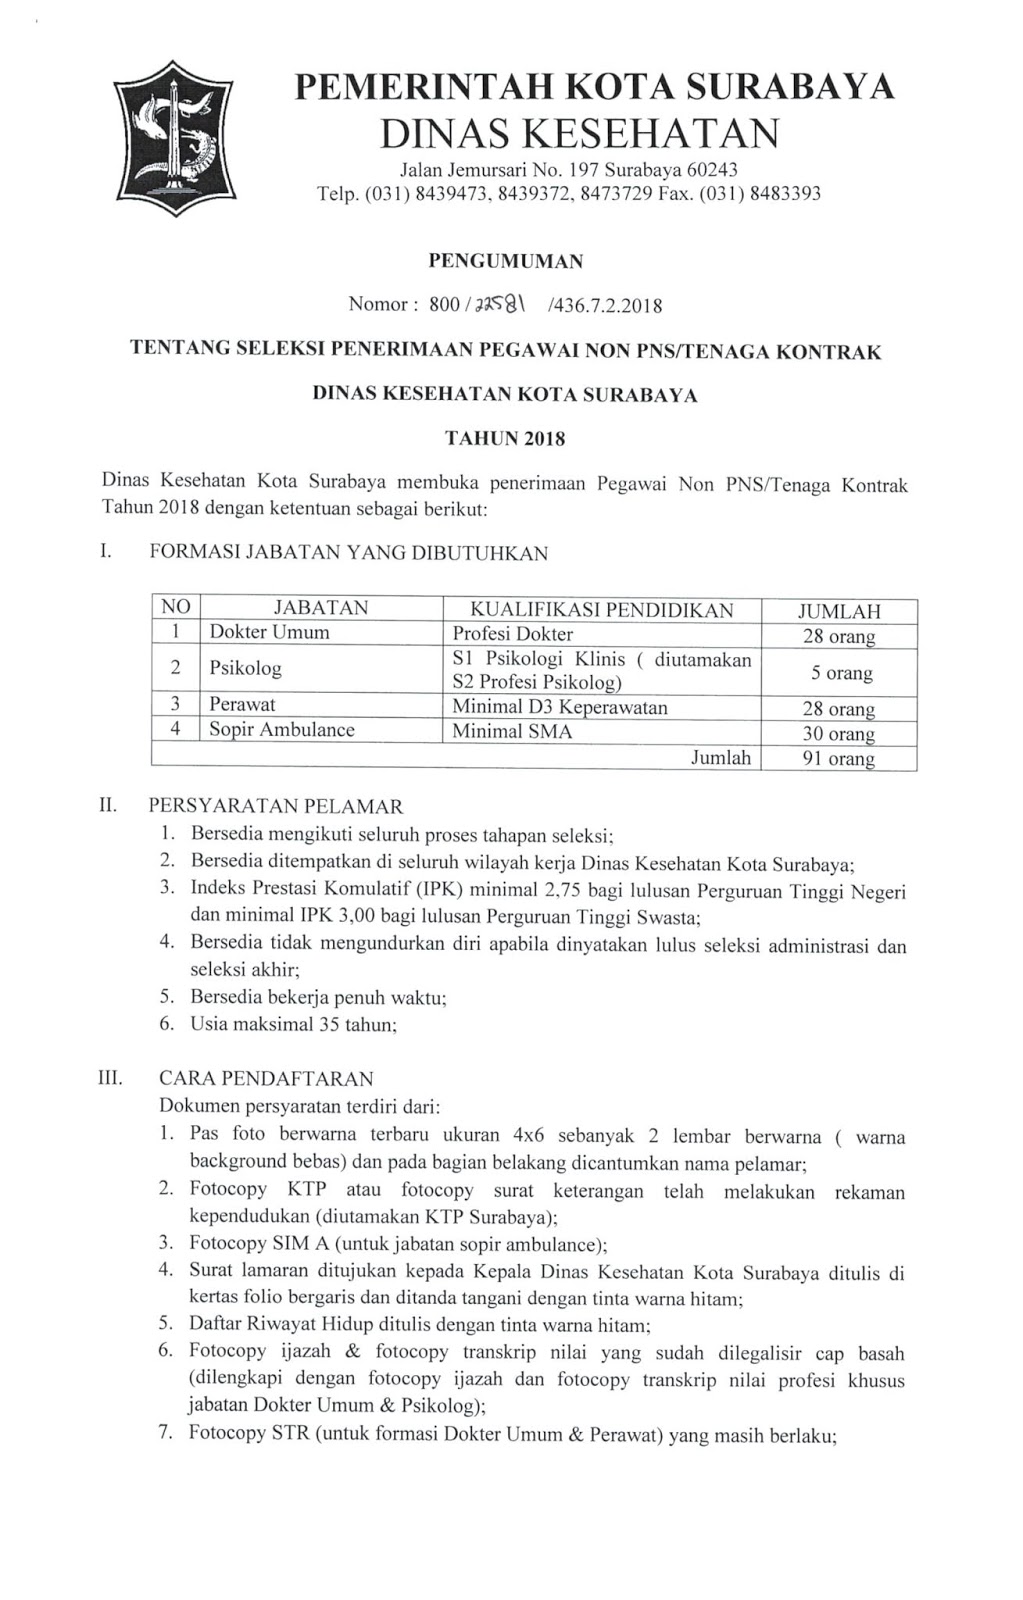 Rekrutmen Non PNS Dinas Kesehatan Kota Surabaya Tahun 2018 - REKRUTMEN